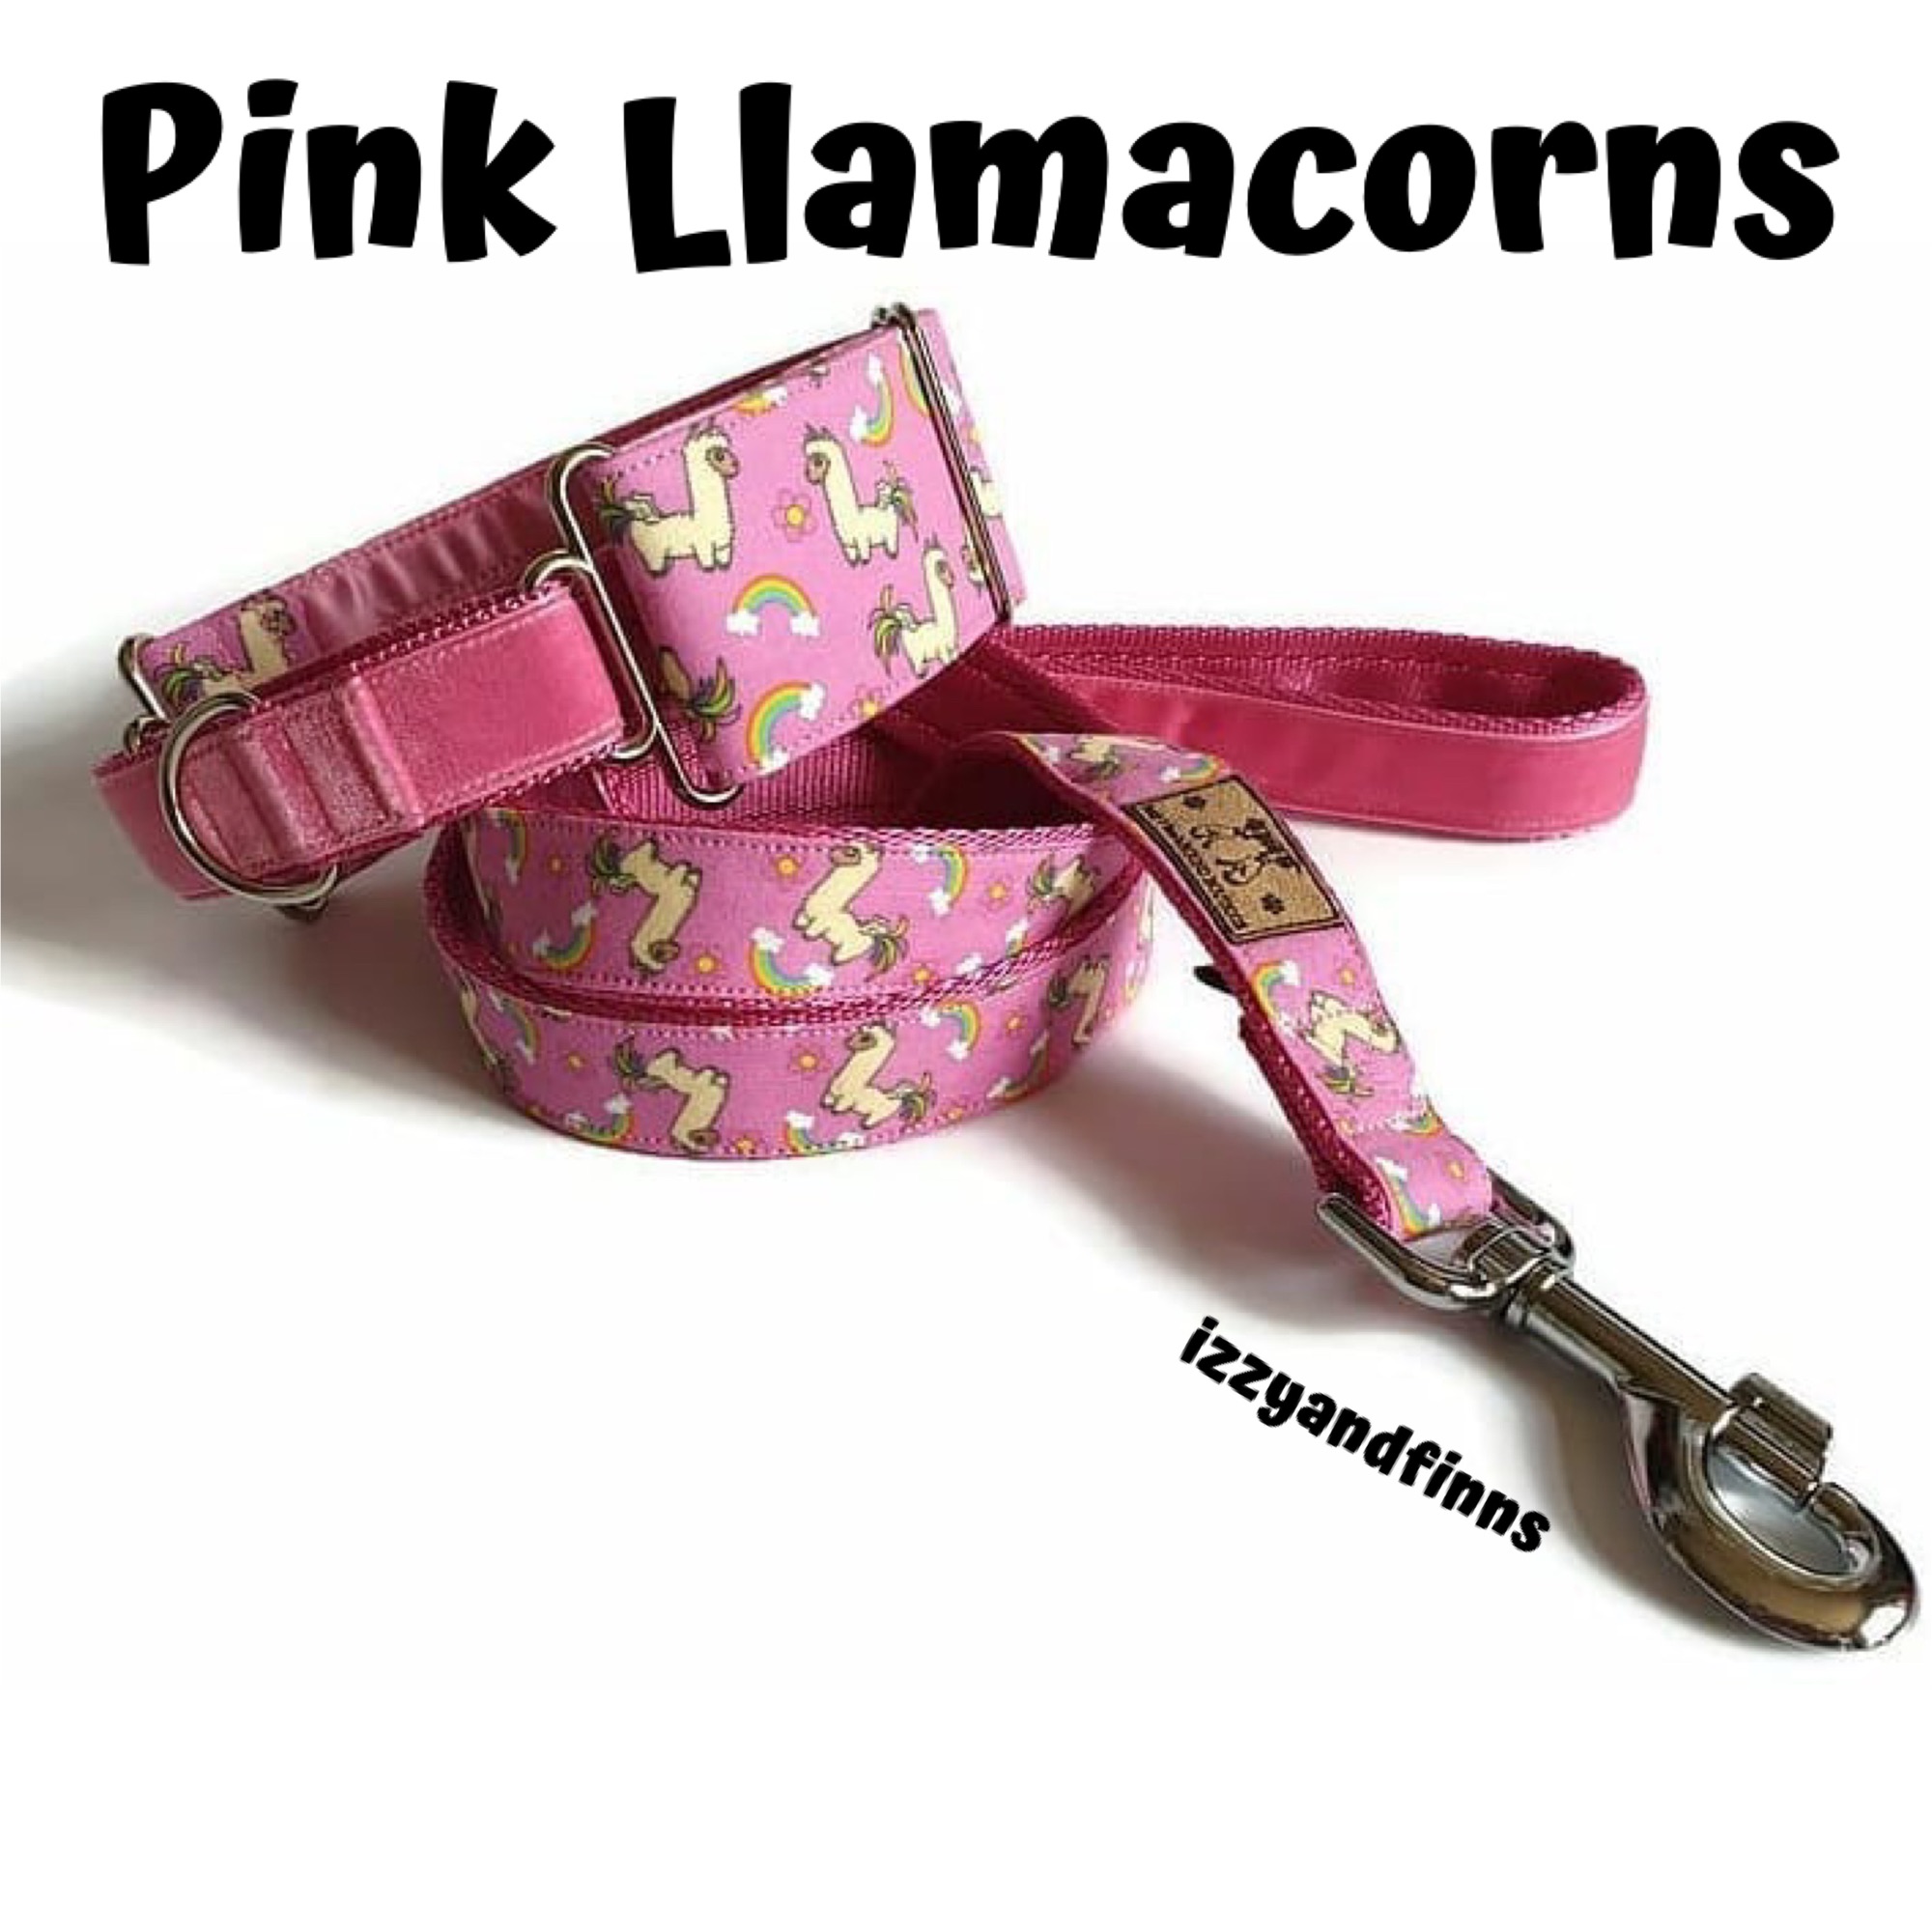 Pink Llamacorns